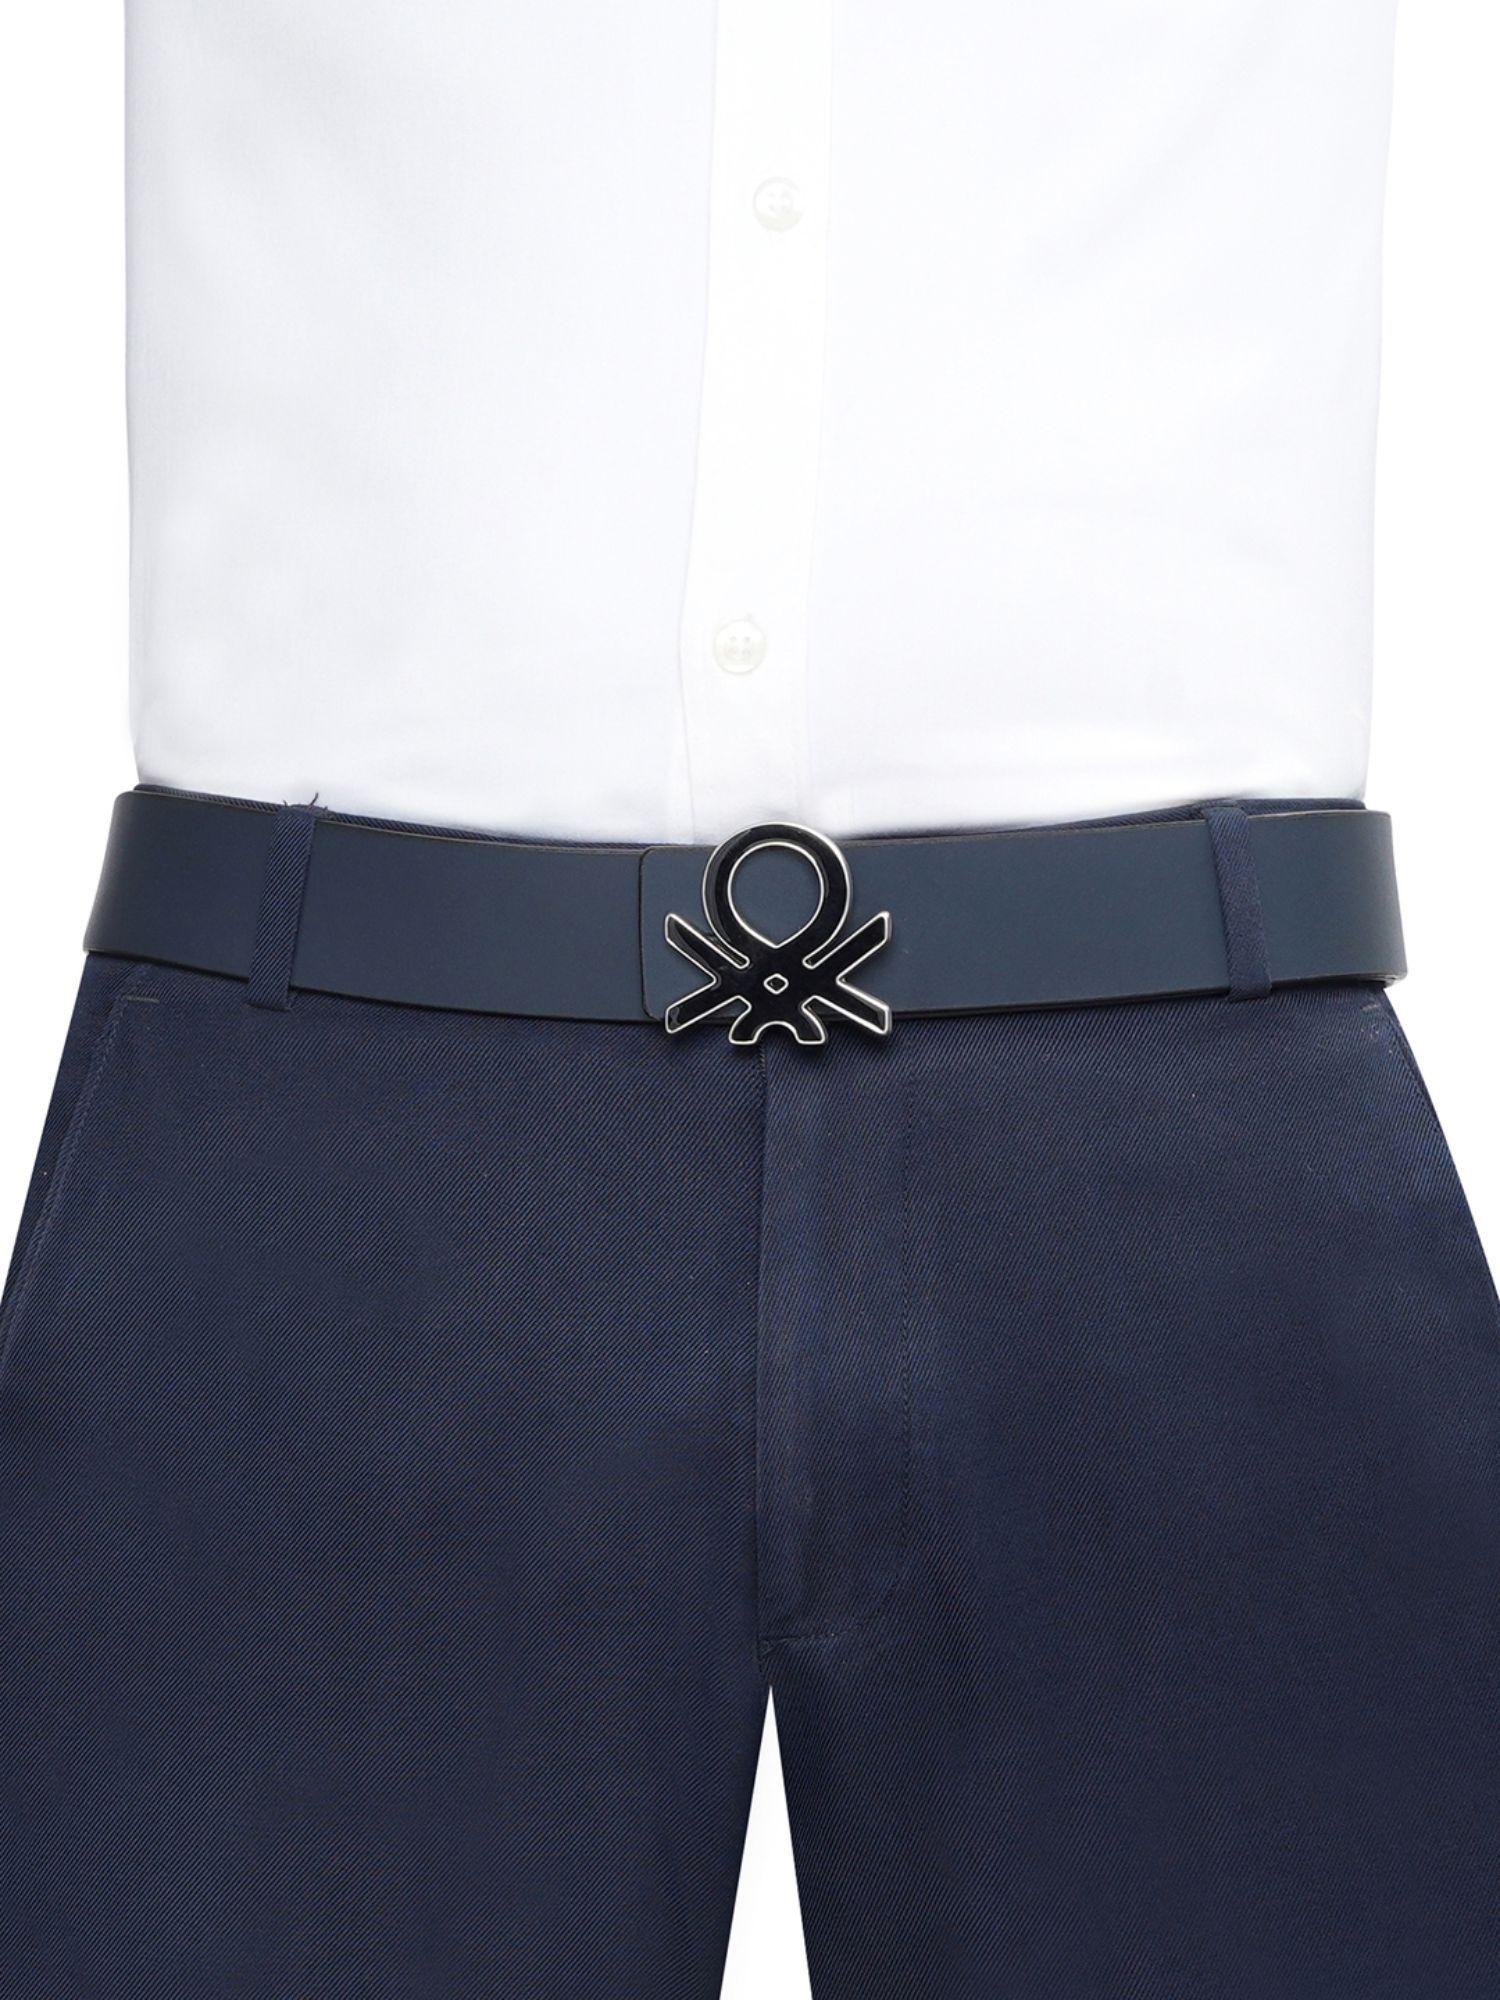 gull men leather reversible belt - navy blue, s 80 cm